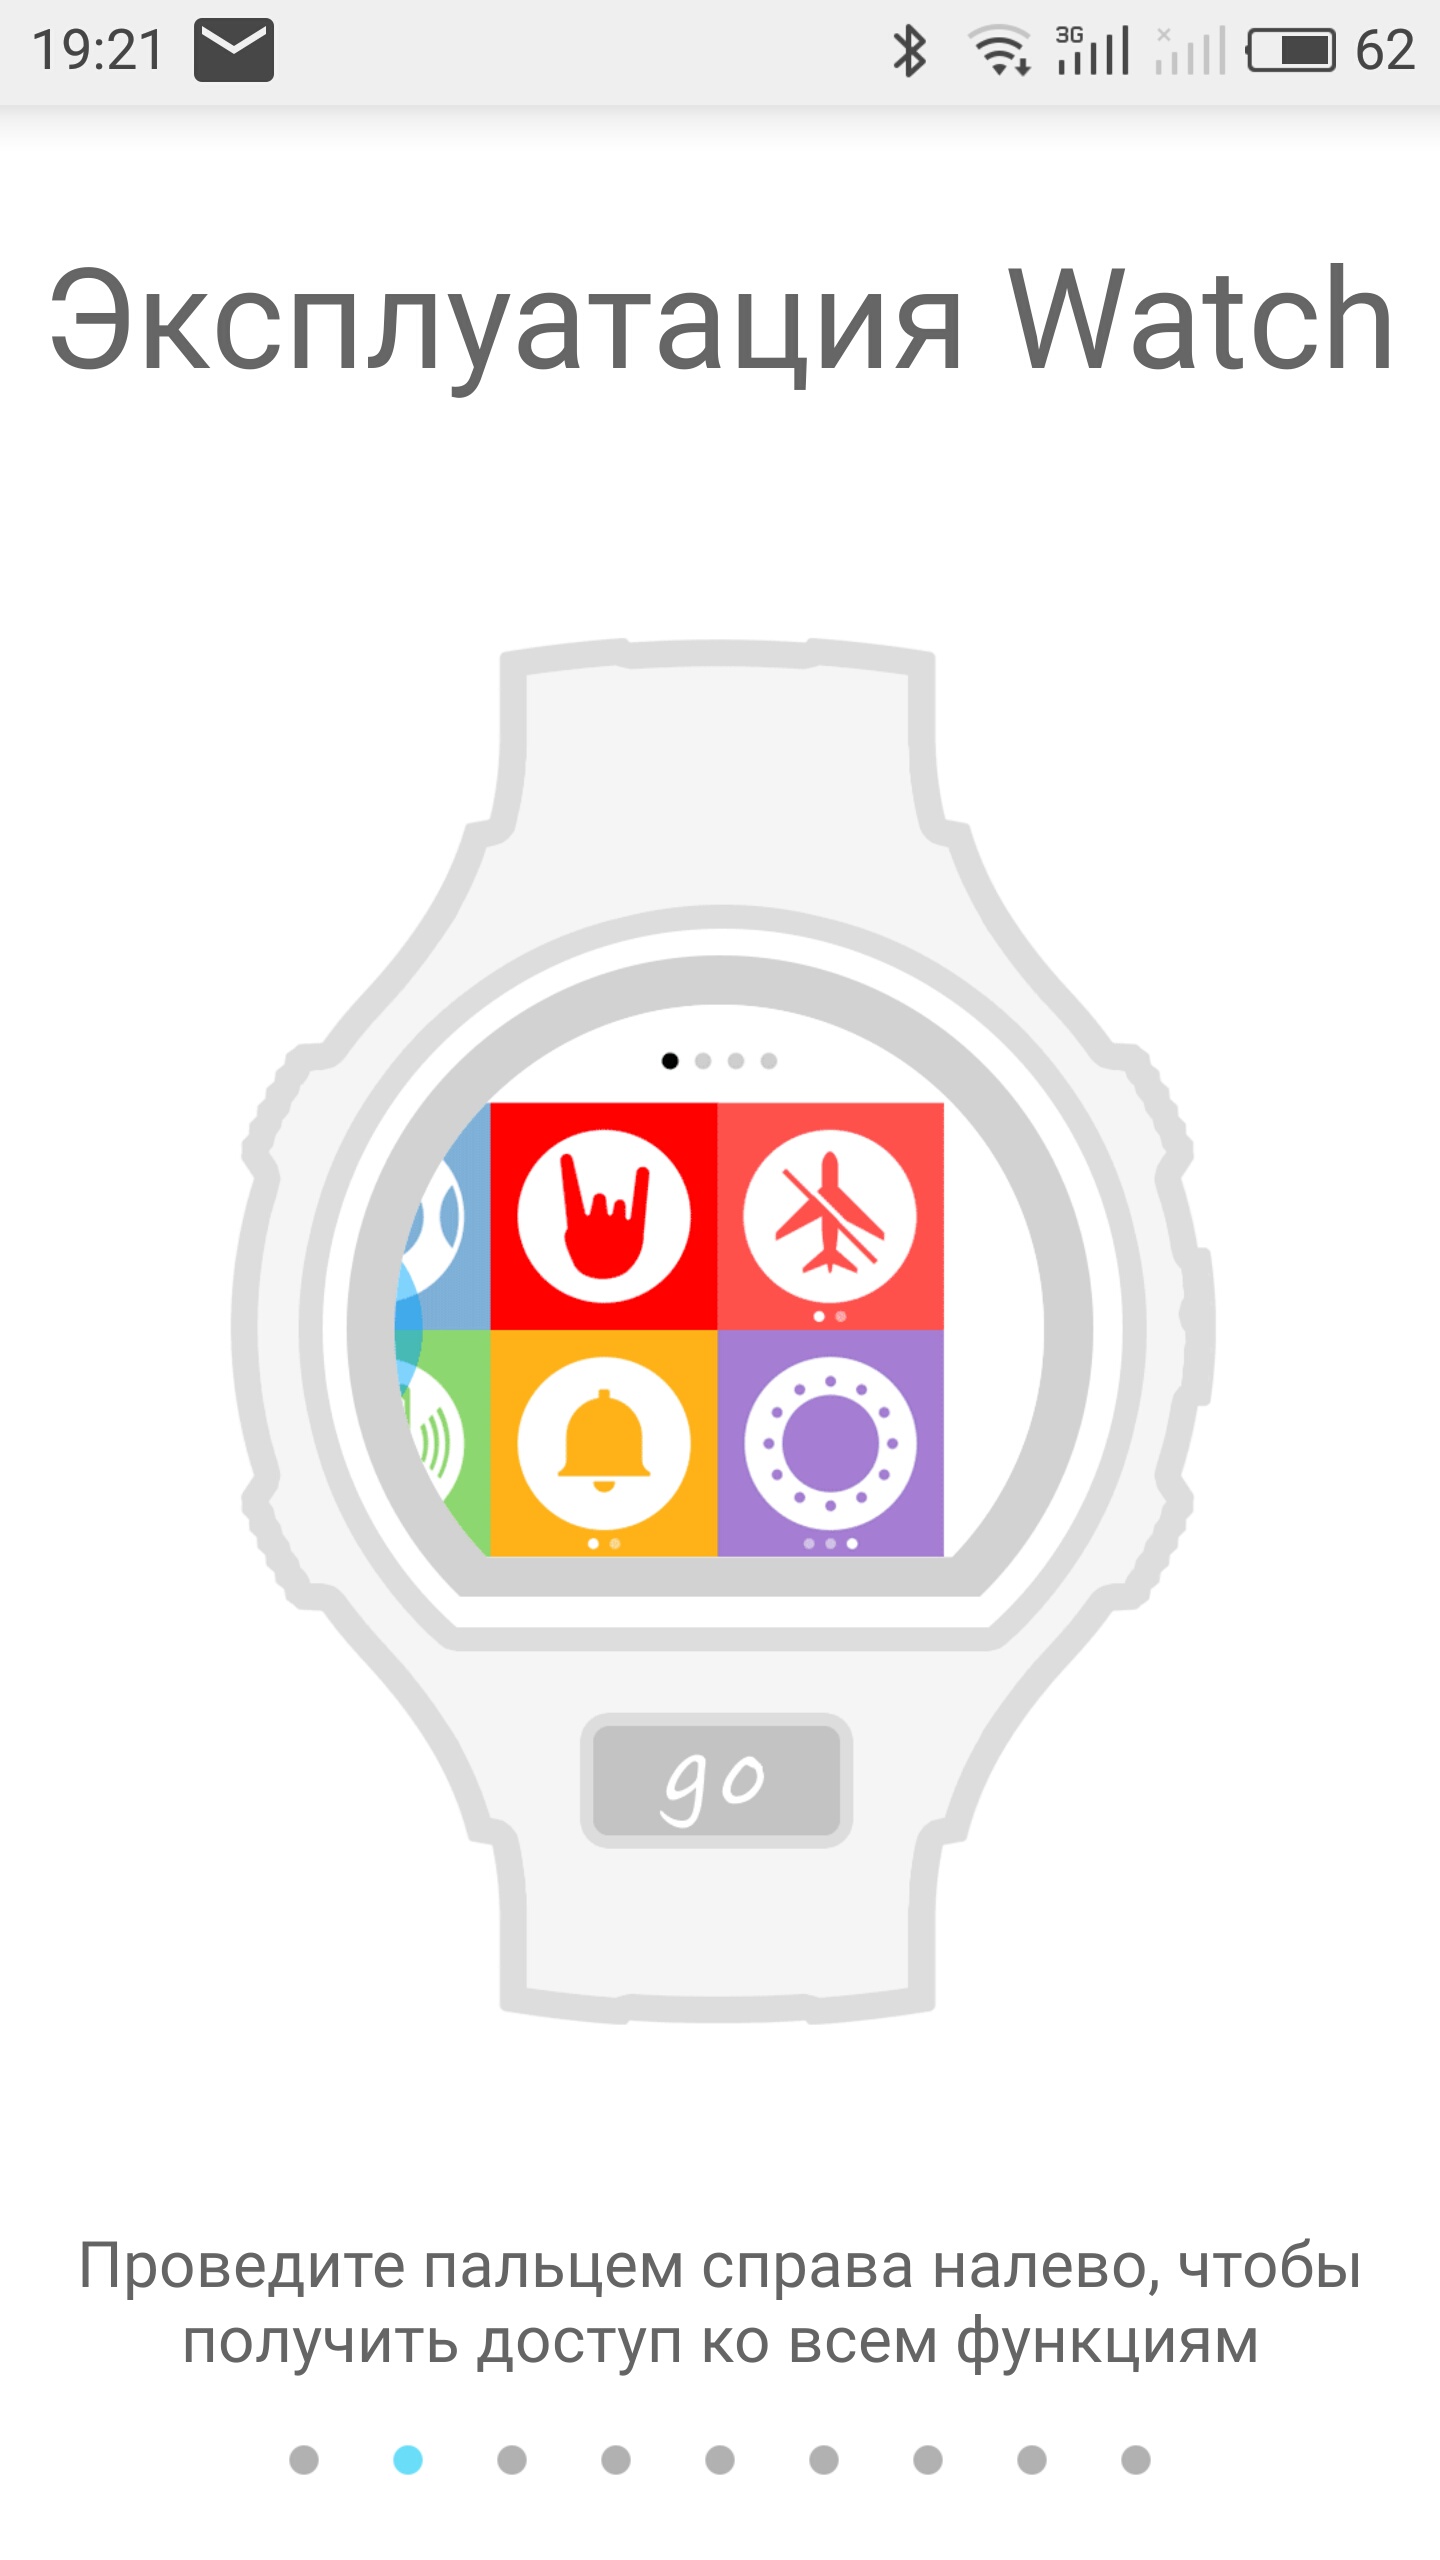 Обзор умных часов Alcatel Onetouch GO Watch: доступные, молодежные-30